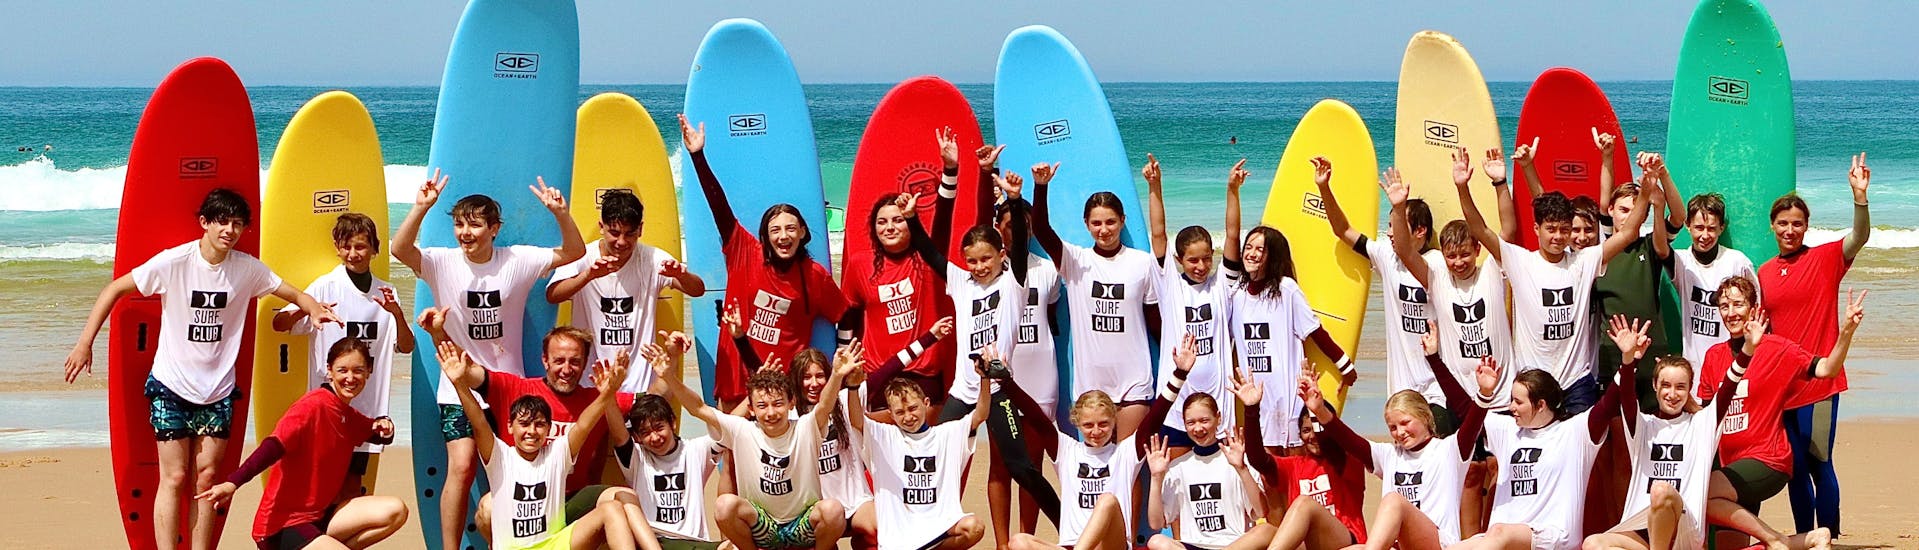 Curso de Surf en Lacanau a partir de 4 años para todos los niveles.